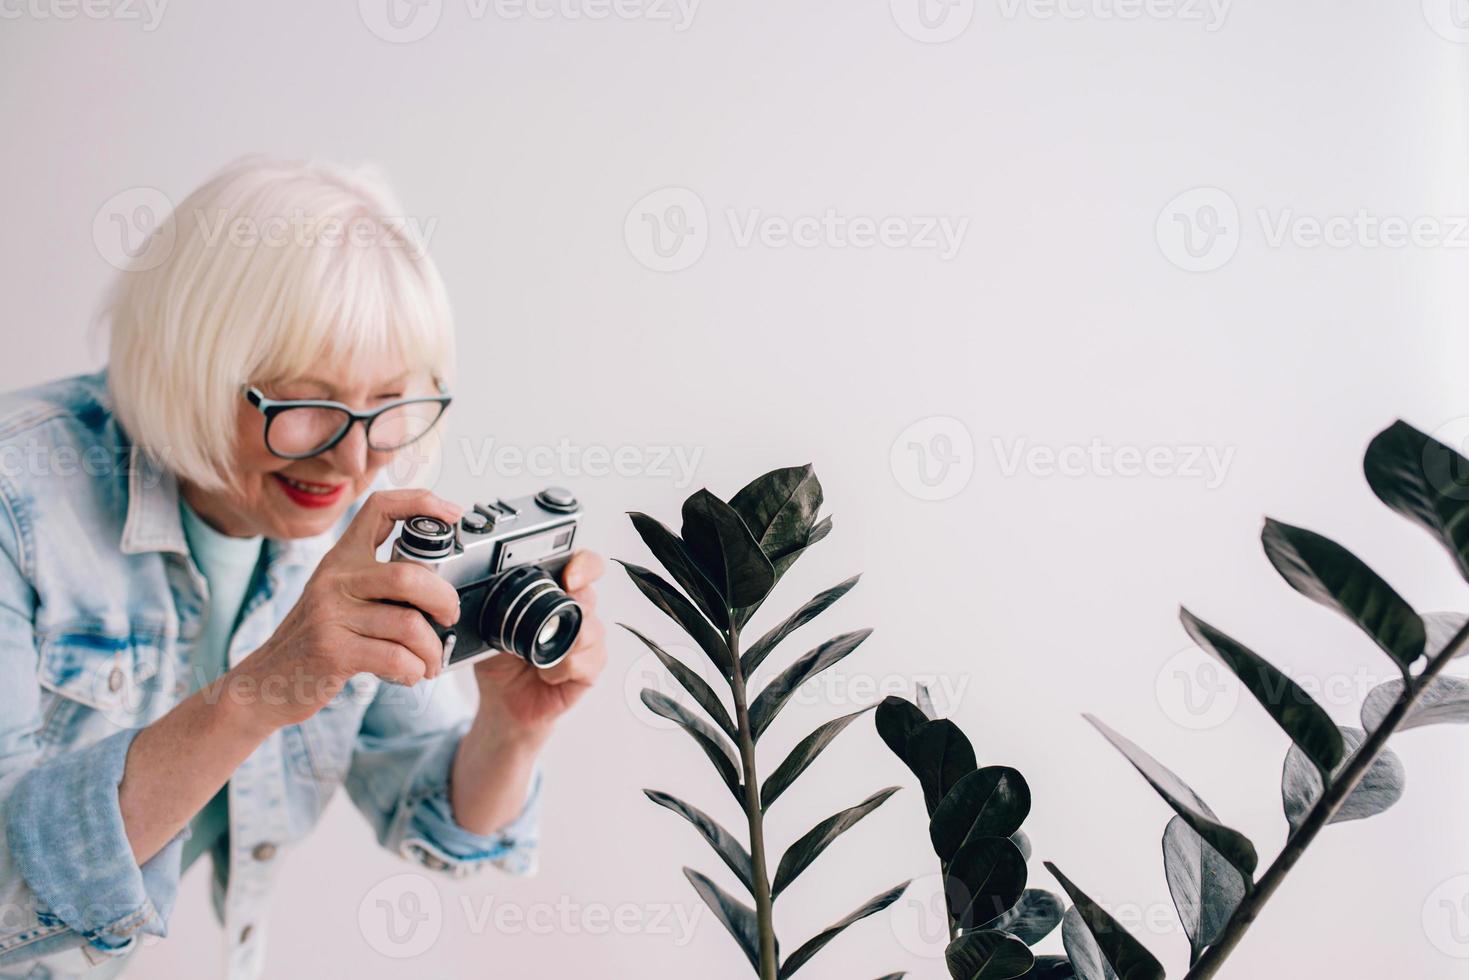 senior snygg kvinna med grått hår och i glasögon och jeansjacka tar bilder av blommor med filmkamera. ålder, hobby, anti age, positiva vibbar, fotografi koncept foto